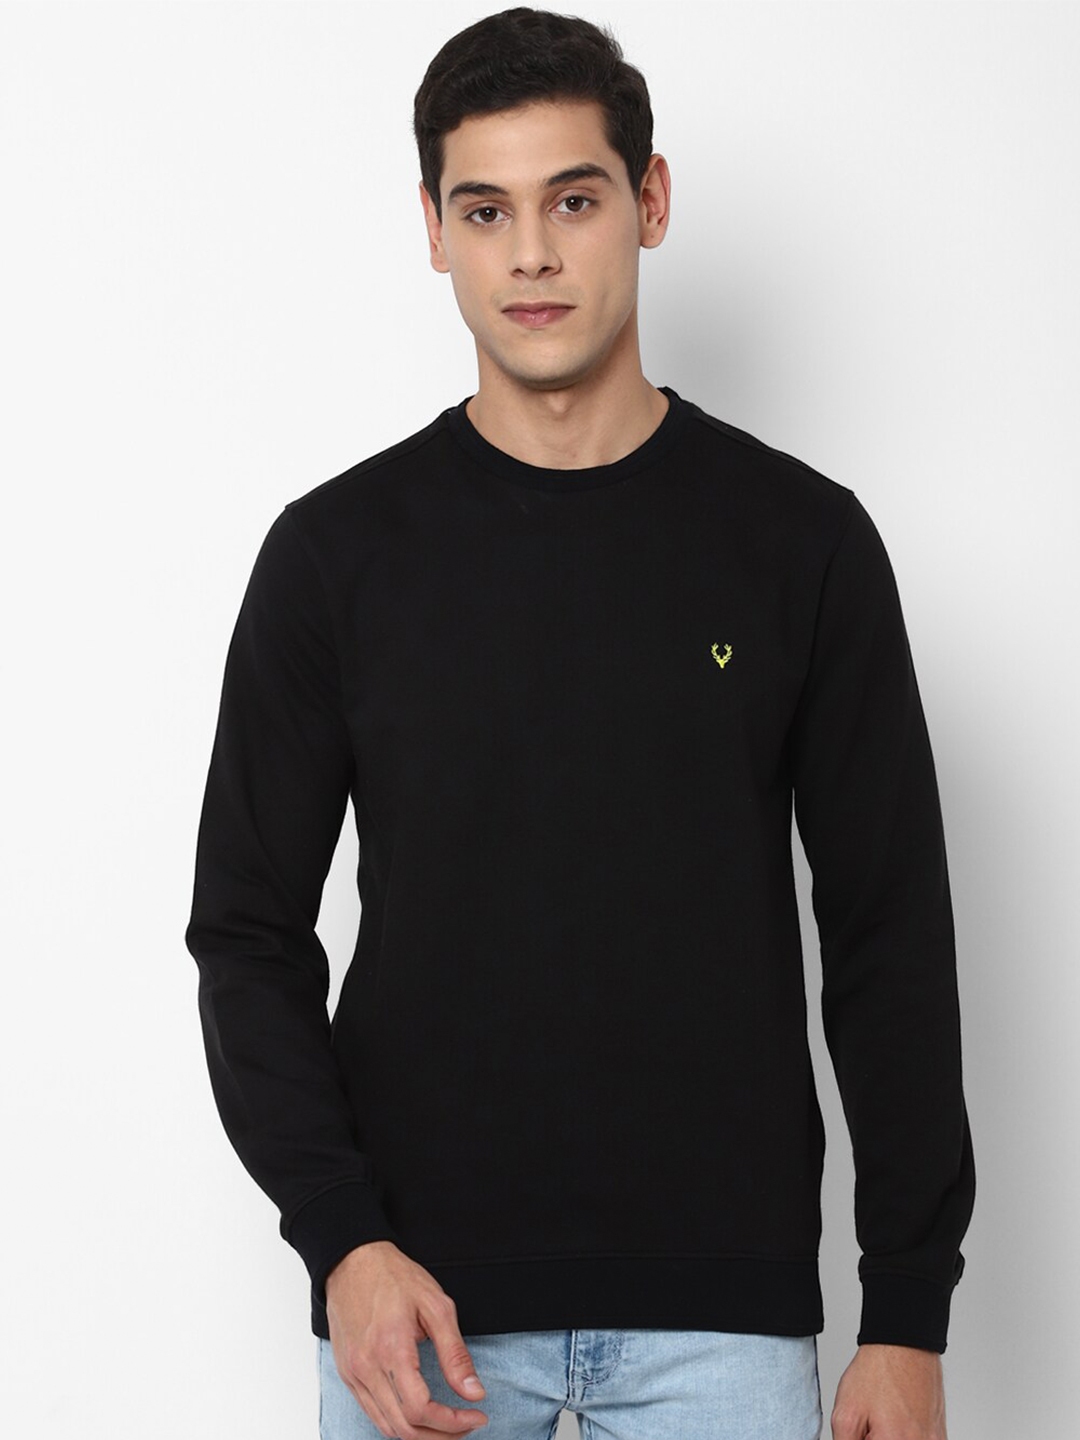 Buy Allen Solly Men Black Cotton Sweatshirt - Sweatshirts for Men ...